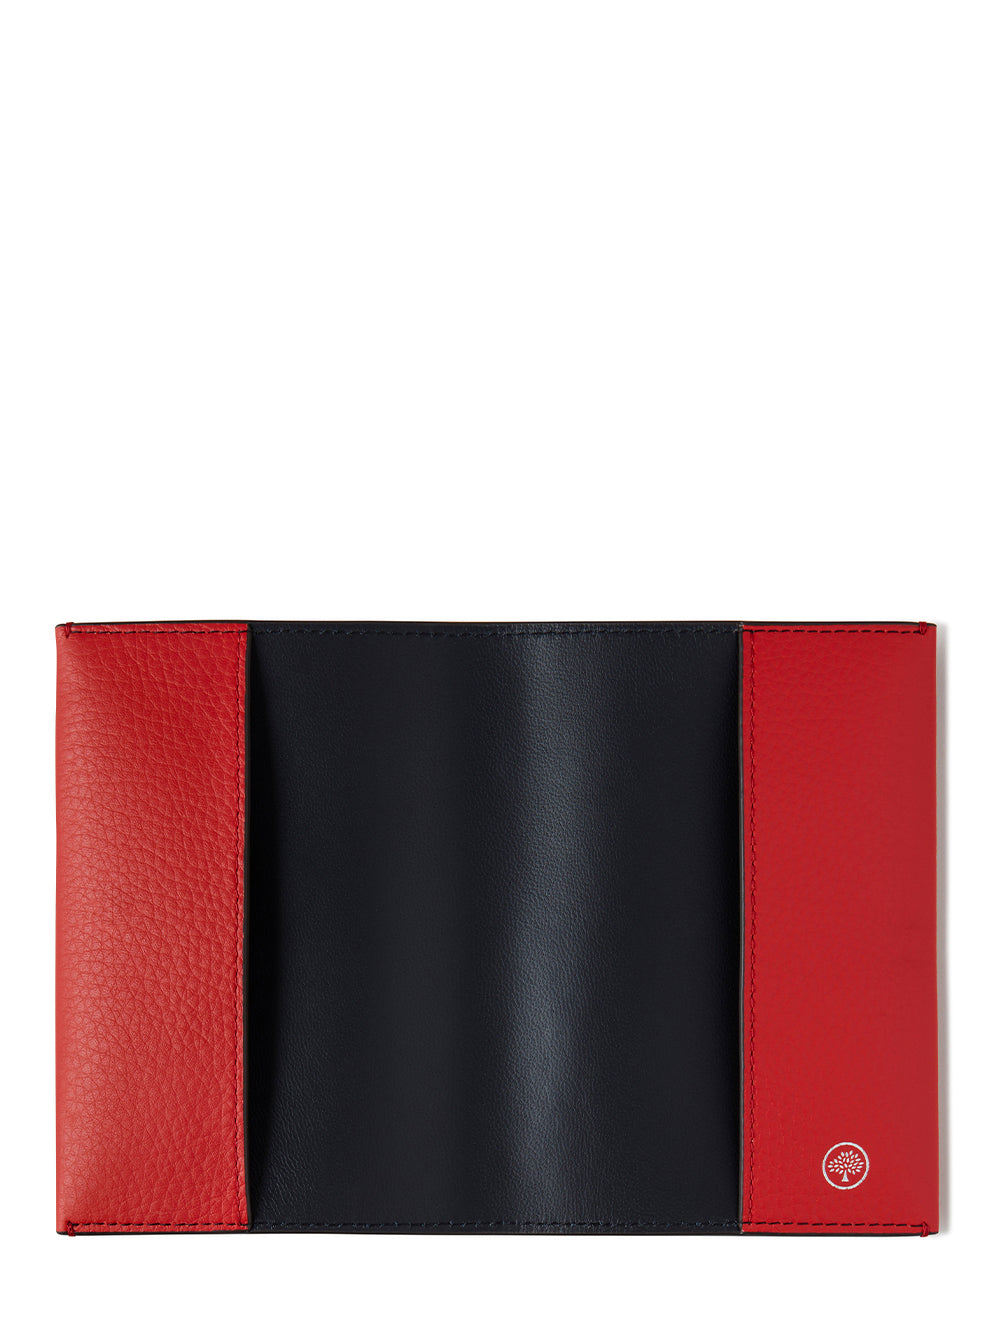 Passport Slip (Hibiscus Red)